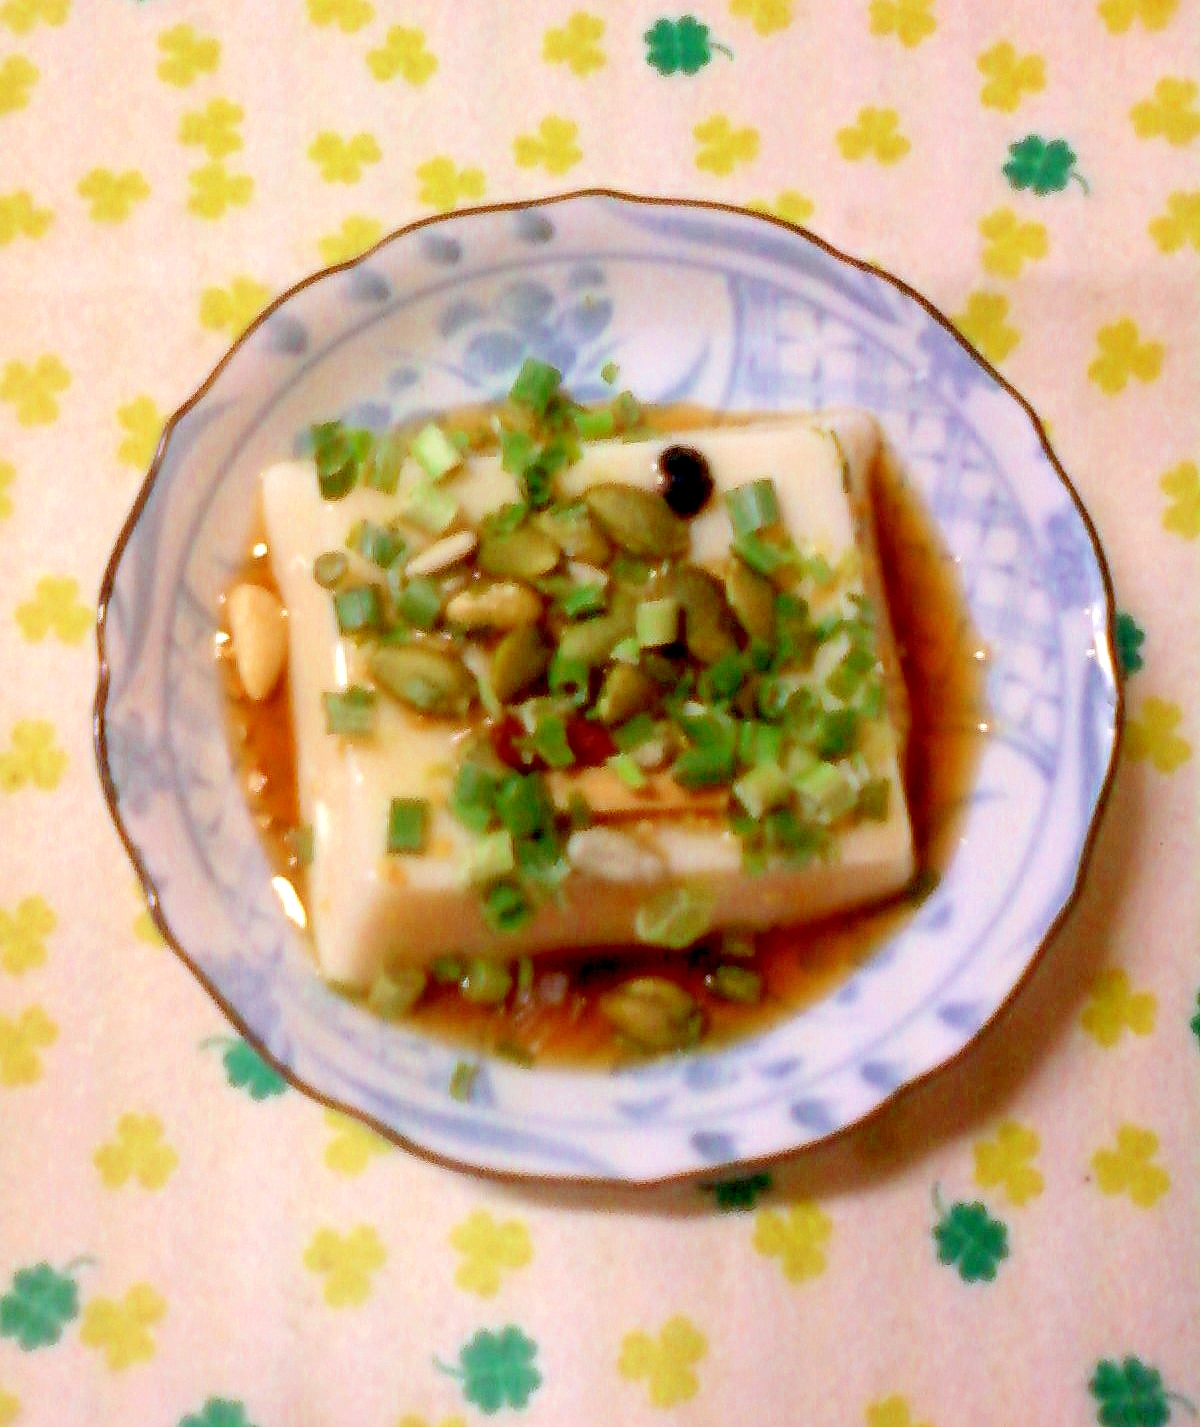 ☆*・酢入り麺つゆとドライフルーツの卵豆腐☆*:・